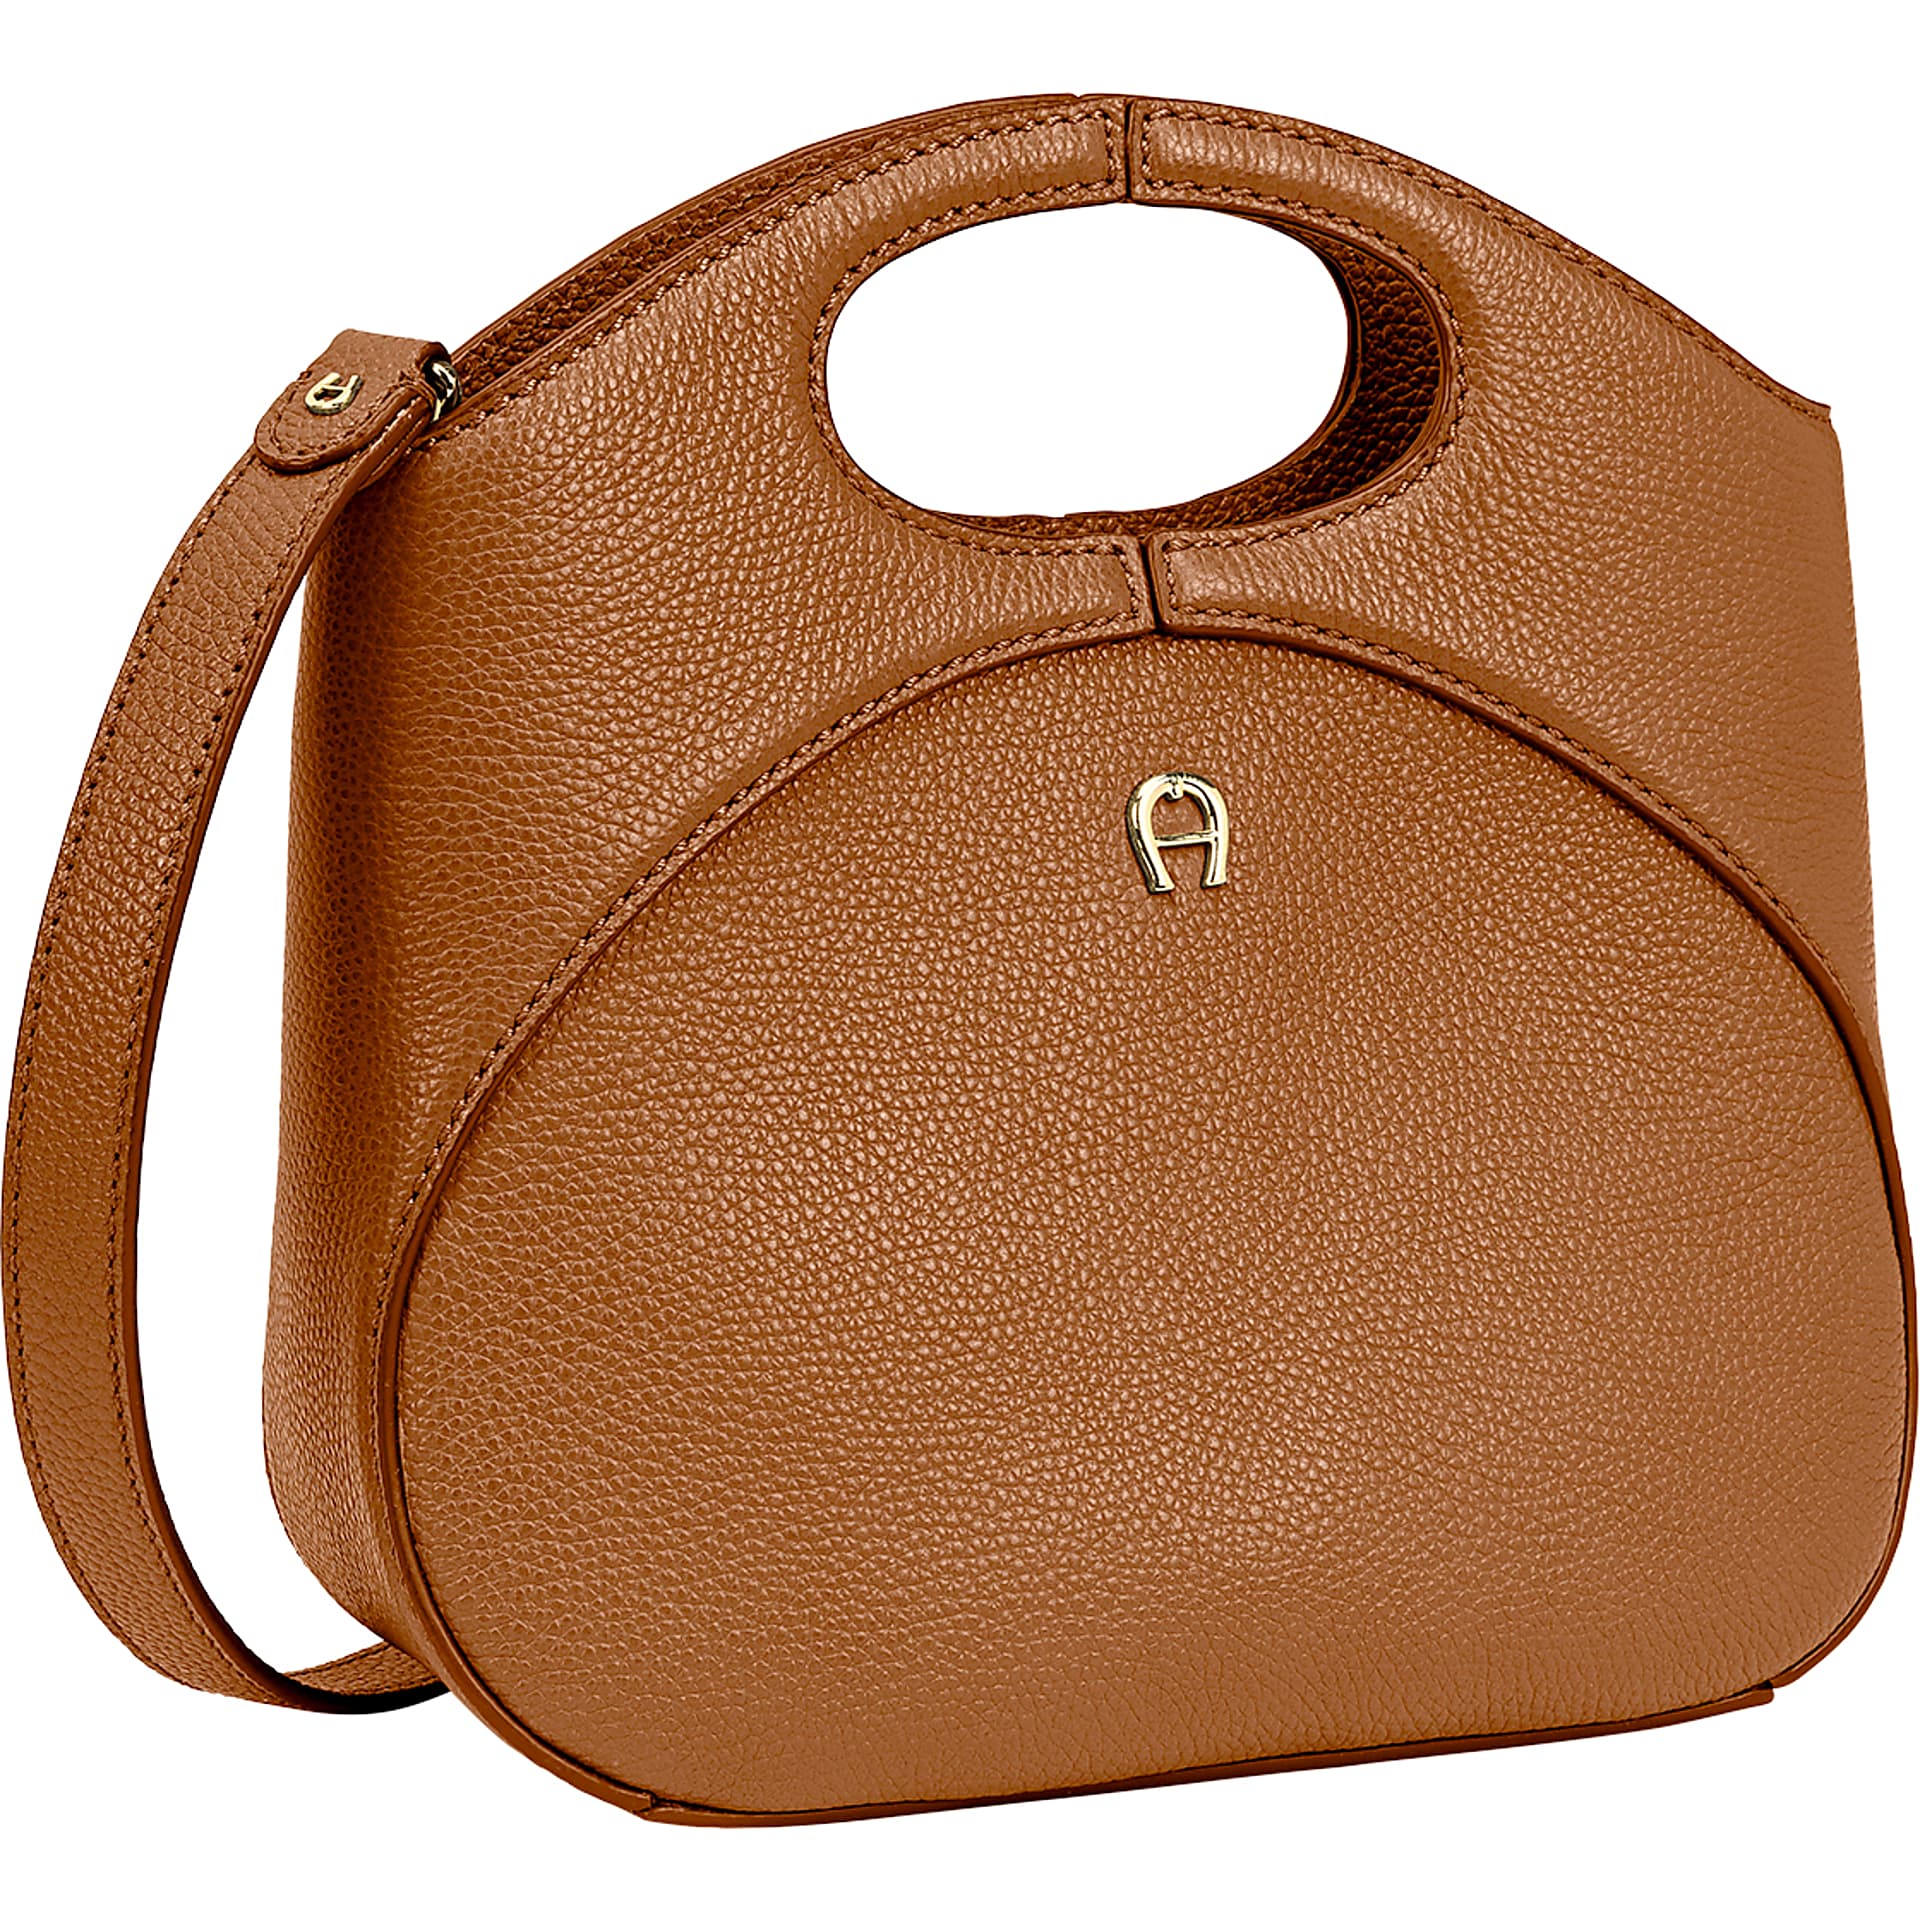 Barbara Mini Bag S cognac brown - Bags - Women - Aigner